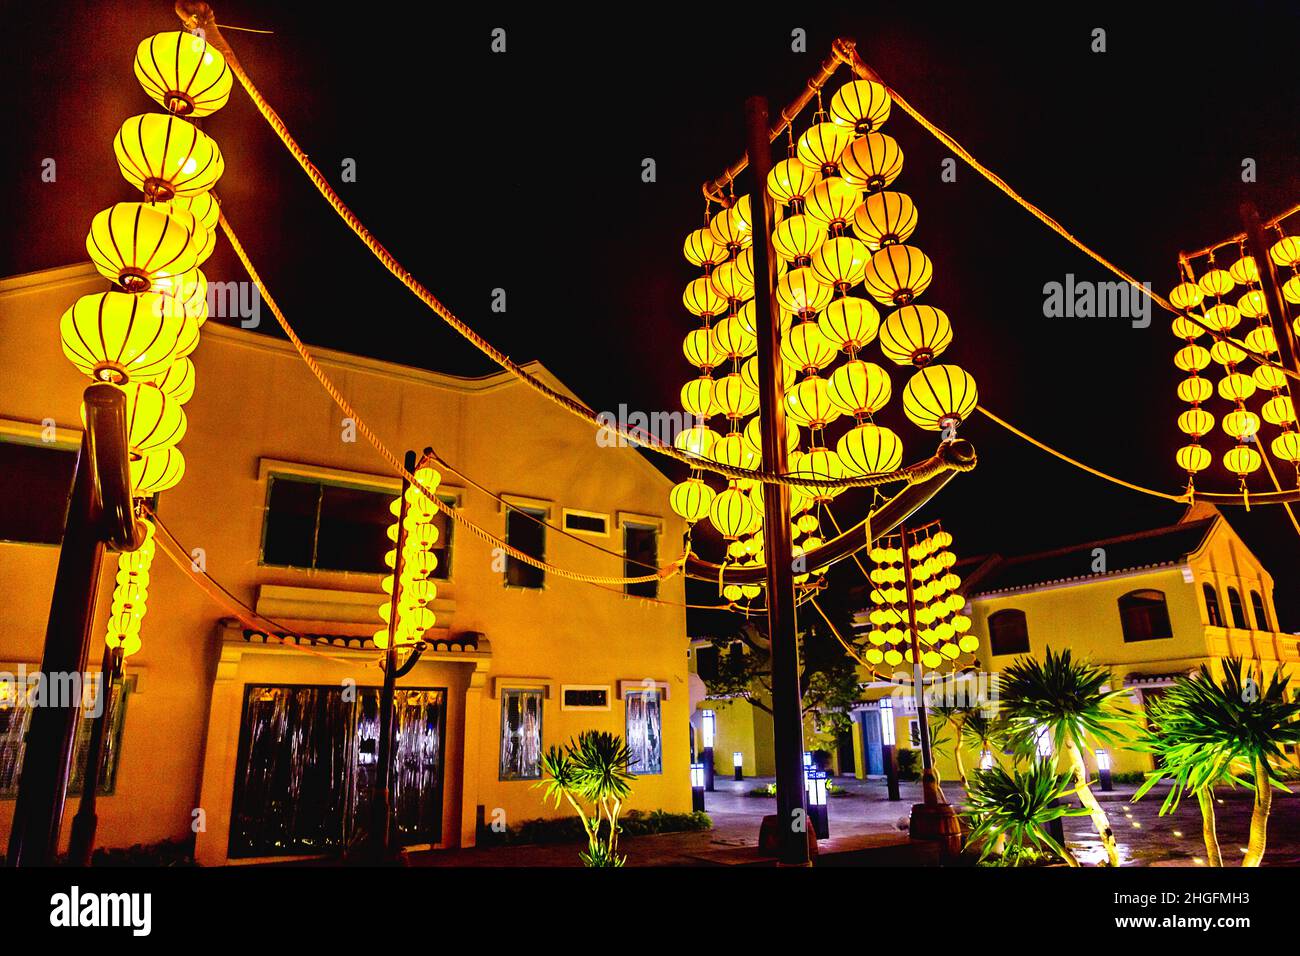 Des lanternes en soie jaune sont accrochées à des poteaux devant les magasins de Hoi an, parc à thème impressions. Banque D'Images